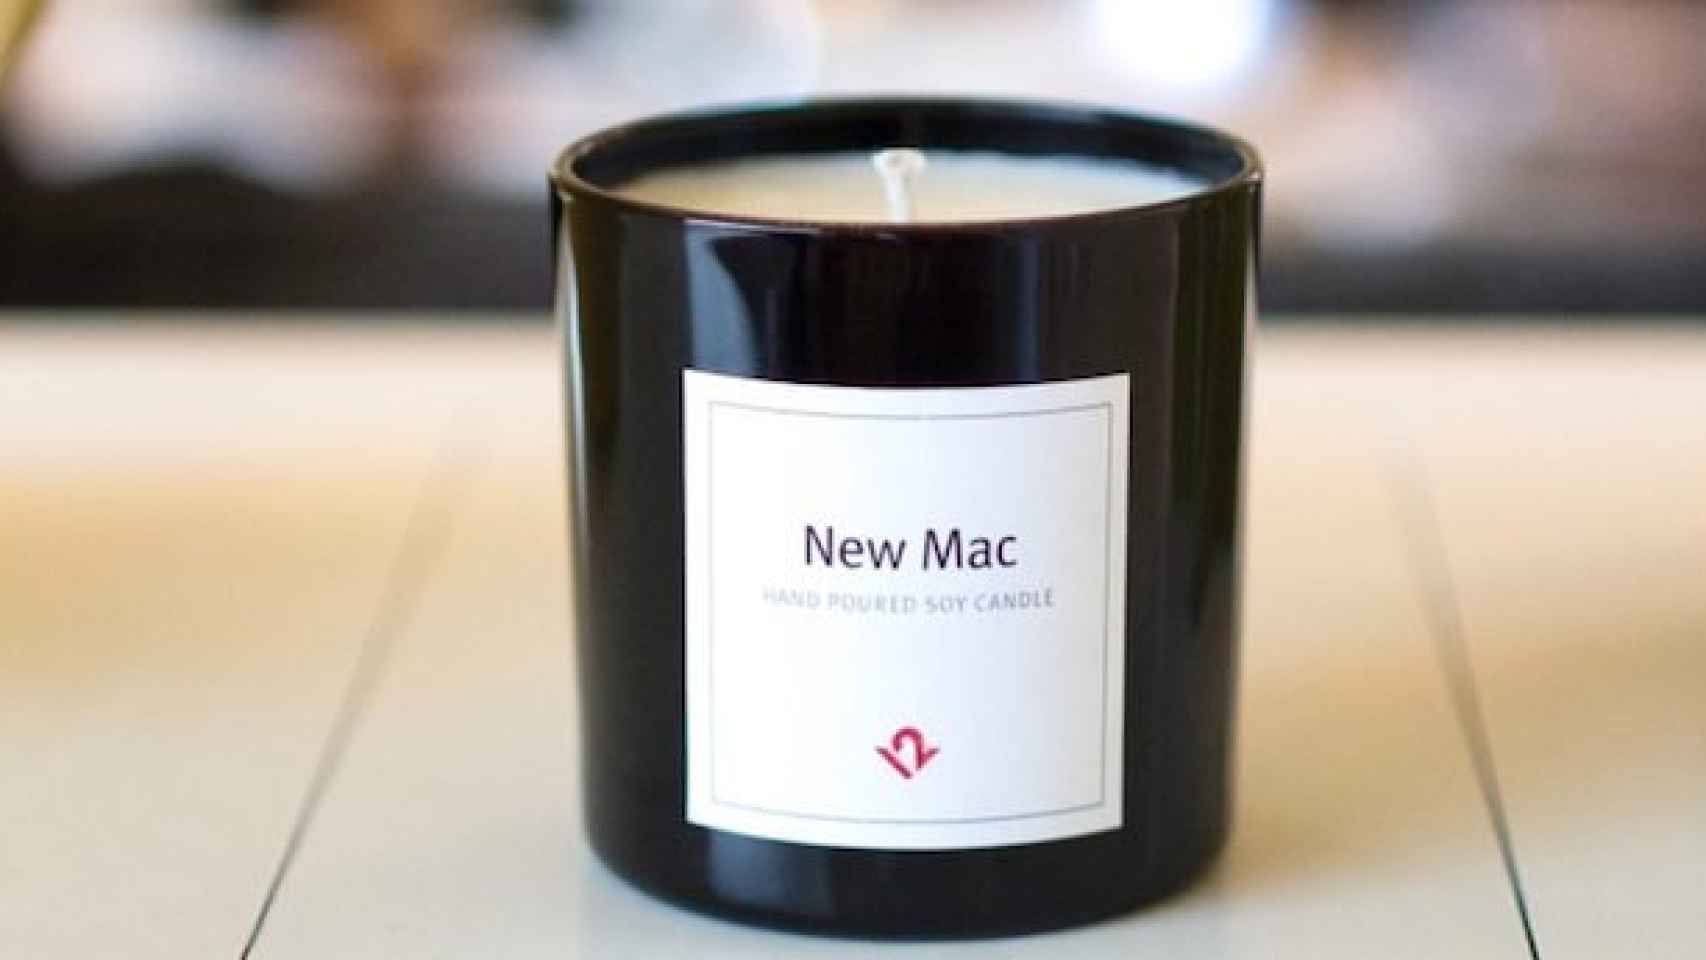 Vela con olor a Mac Nuevo, New Mac Aroma.